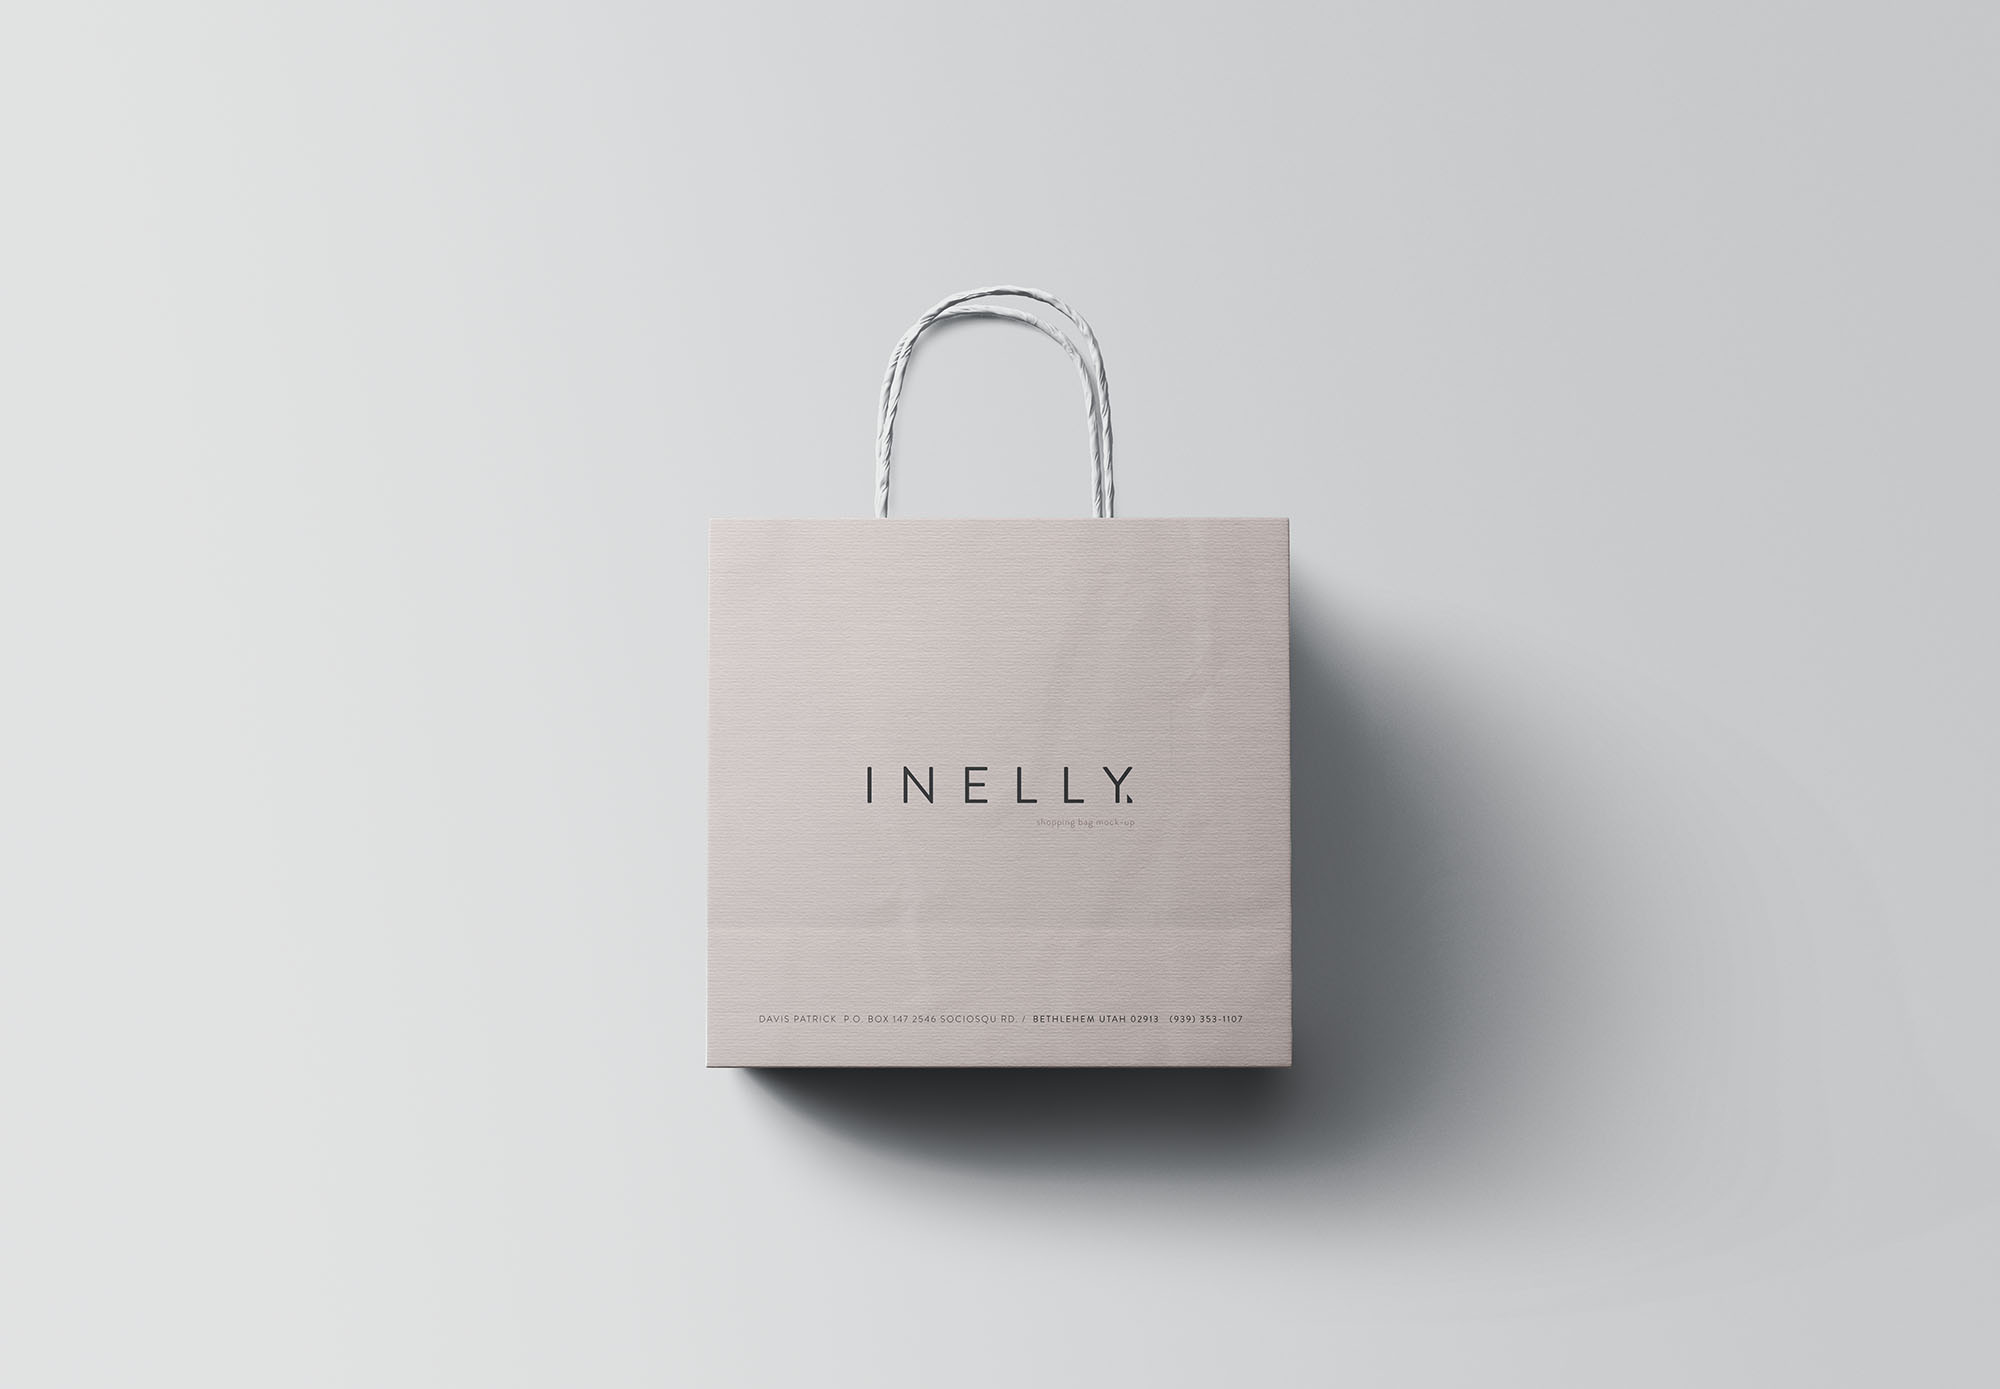 品牌商店购物纸袋设计效果图样机PSD模板 Paper Shopping Bag Mockup (PSD)插图(3)